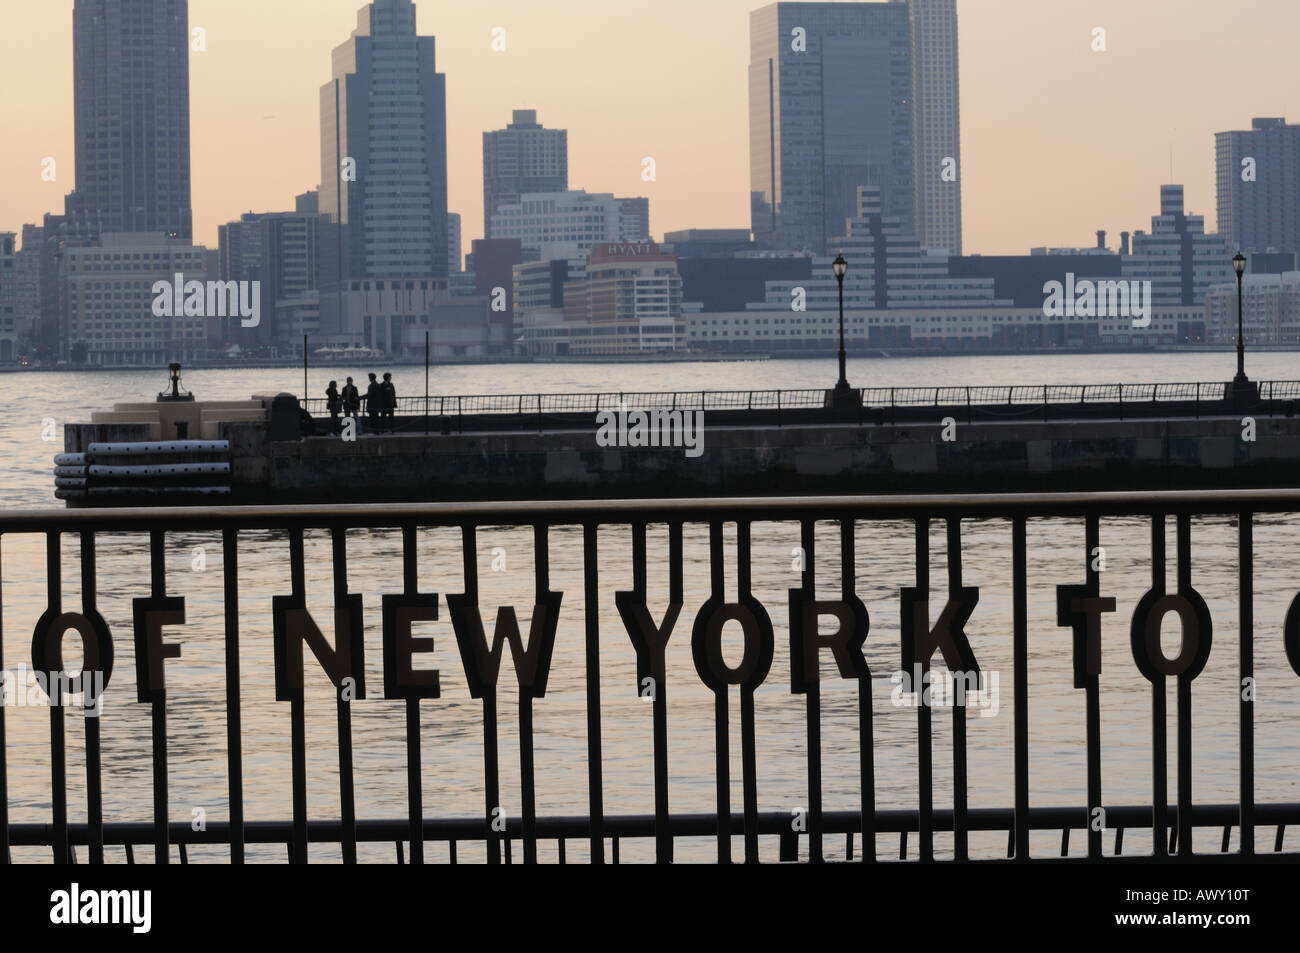 Lignes d'un poème de Walt Whitman décrivant la ville de New York ont été placés sur une balustrade dans Battery Park City. Banque D'Images